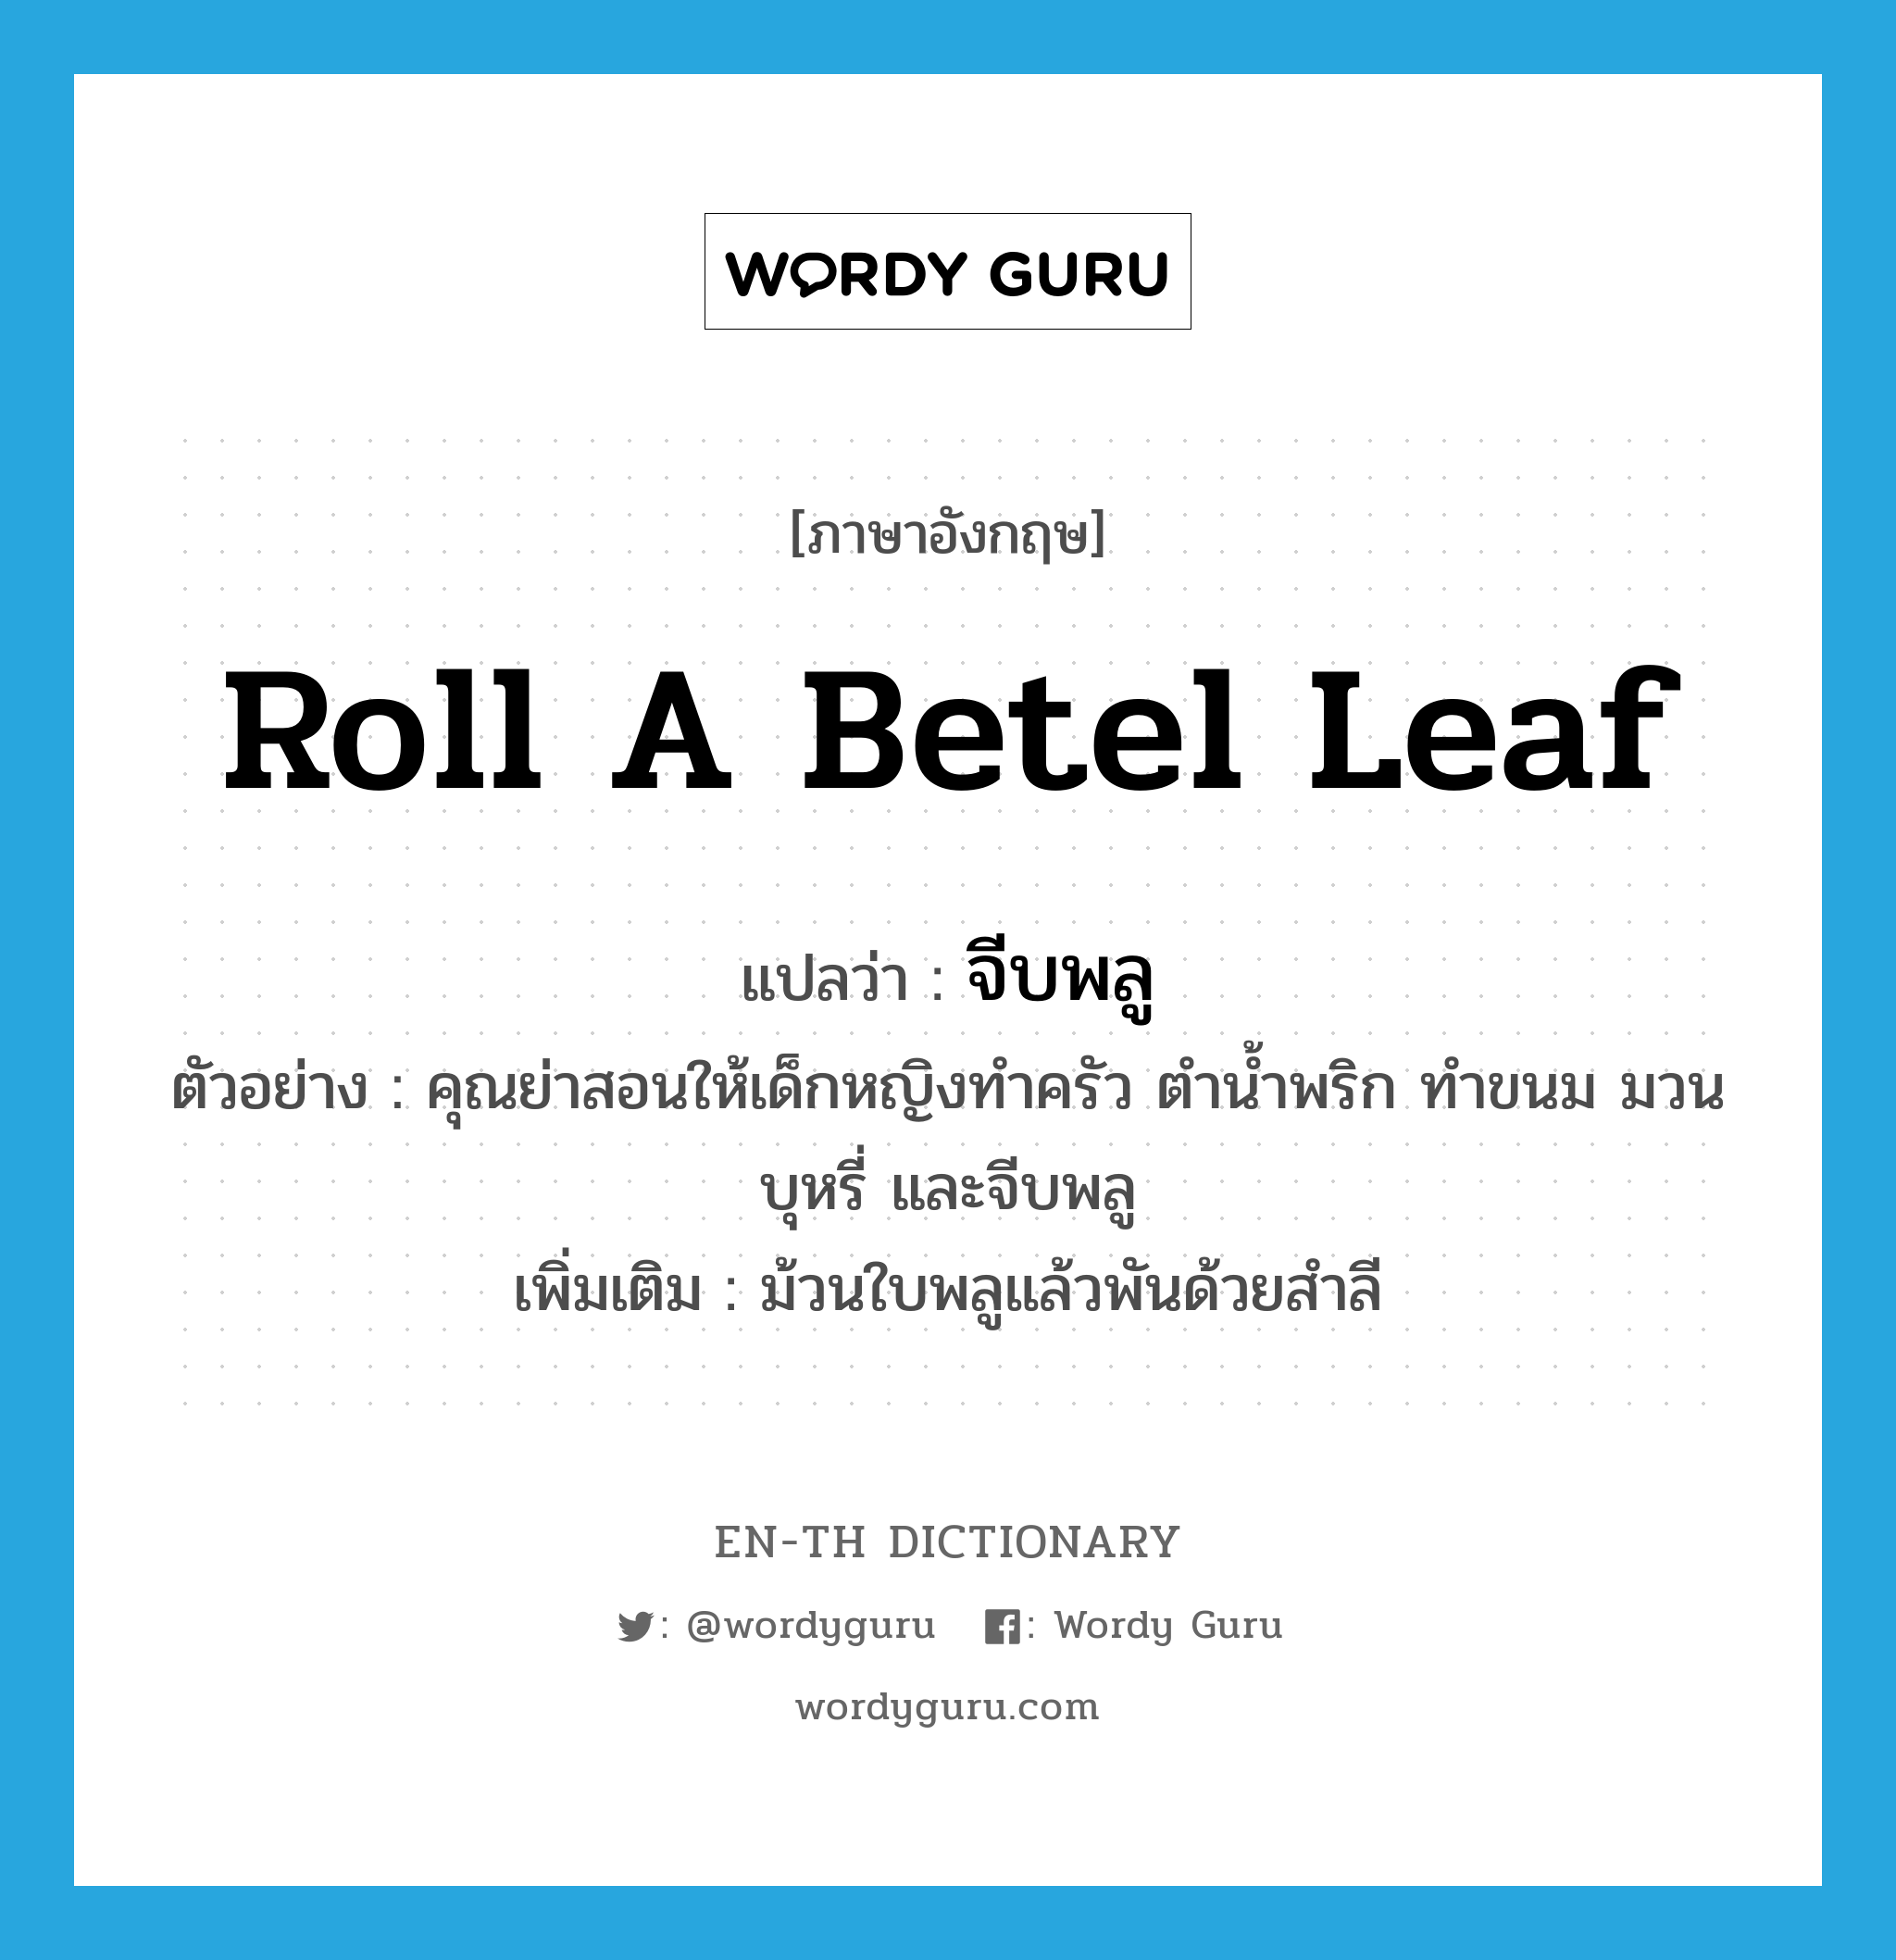 จีบพลู ภาษาอังกฤษ?, คำศัพท์ภาษาอังกฤษ จีบพลู แปลว่า roll a betel leaf ประเภท V ตัวอย่าง คุณย่าสอนให้เด็กหญิงทำครัว ตำน้ำพริก ทำขนม มวนบุหรี่ และจีบพลู เพิ่มเติม ม้วนใบพลูแล้วพันด้วยสำลี หมวด V